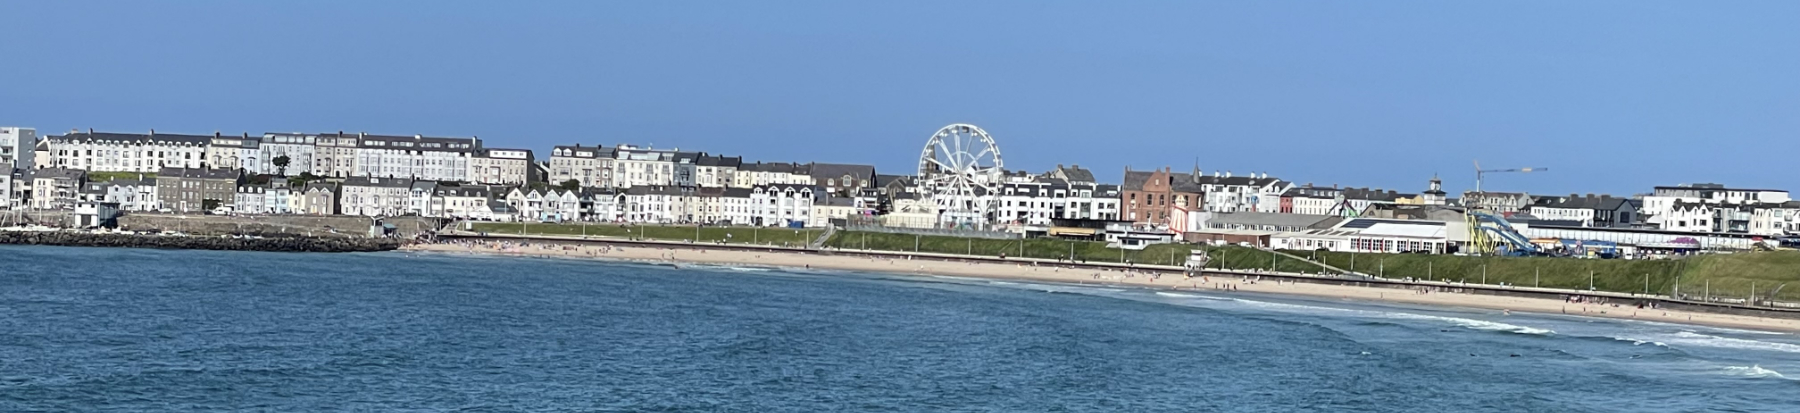 Portrush Beach Panorama